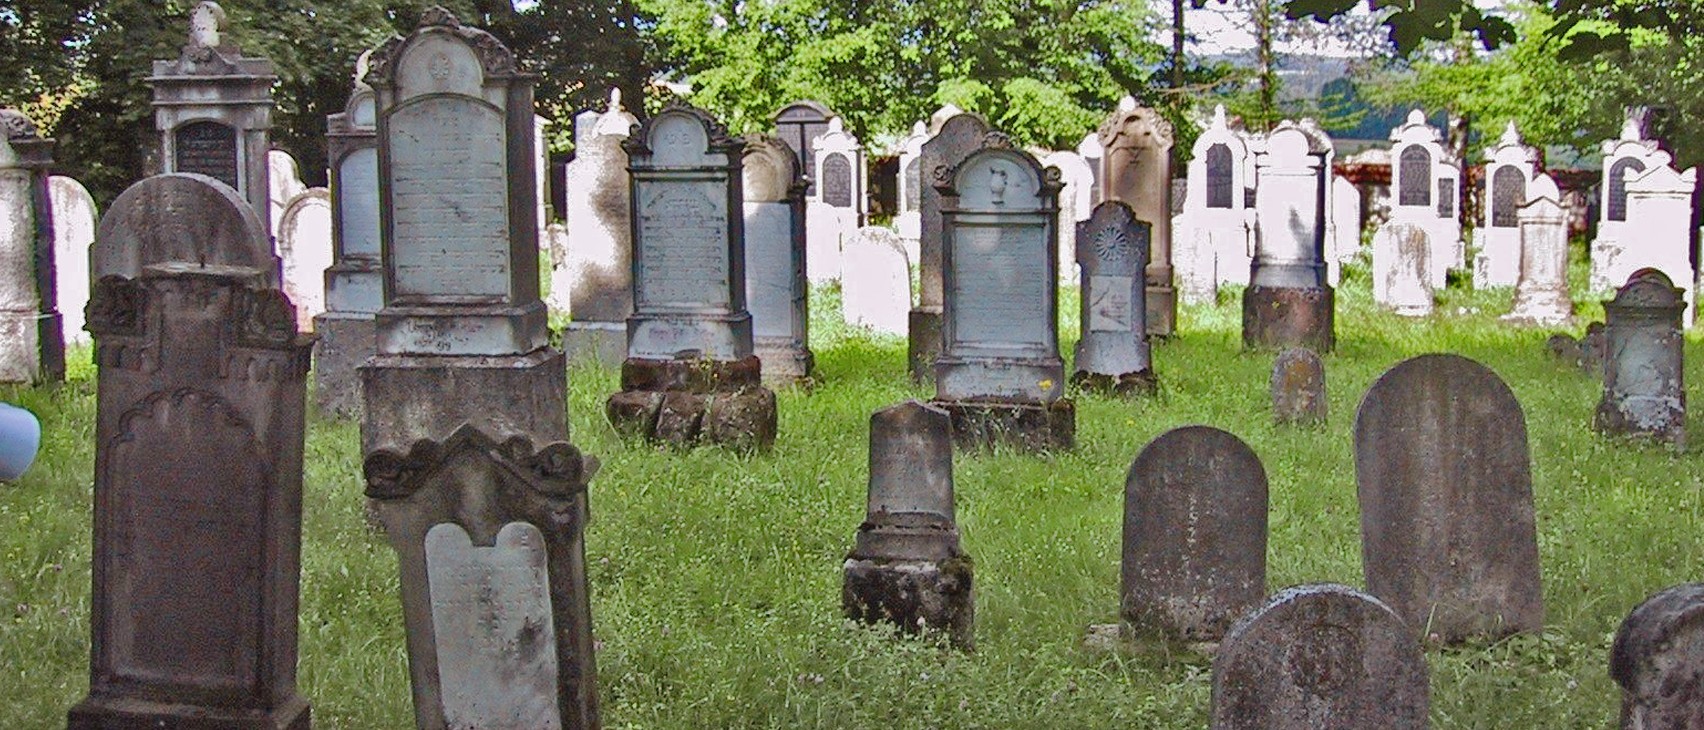 Grabsteine mit hebräischen Inschriften auf dem Friedhof in Fischach. Führt zur Unterseite &quot;Fischach&quot;.